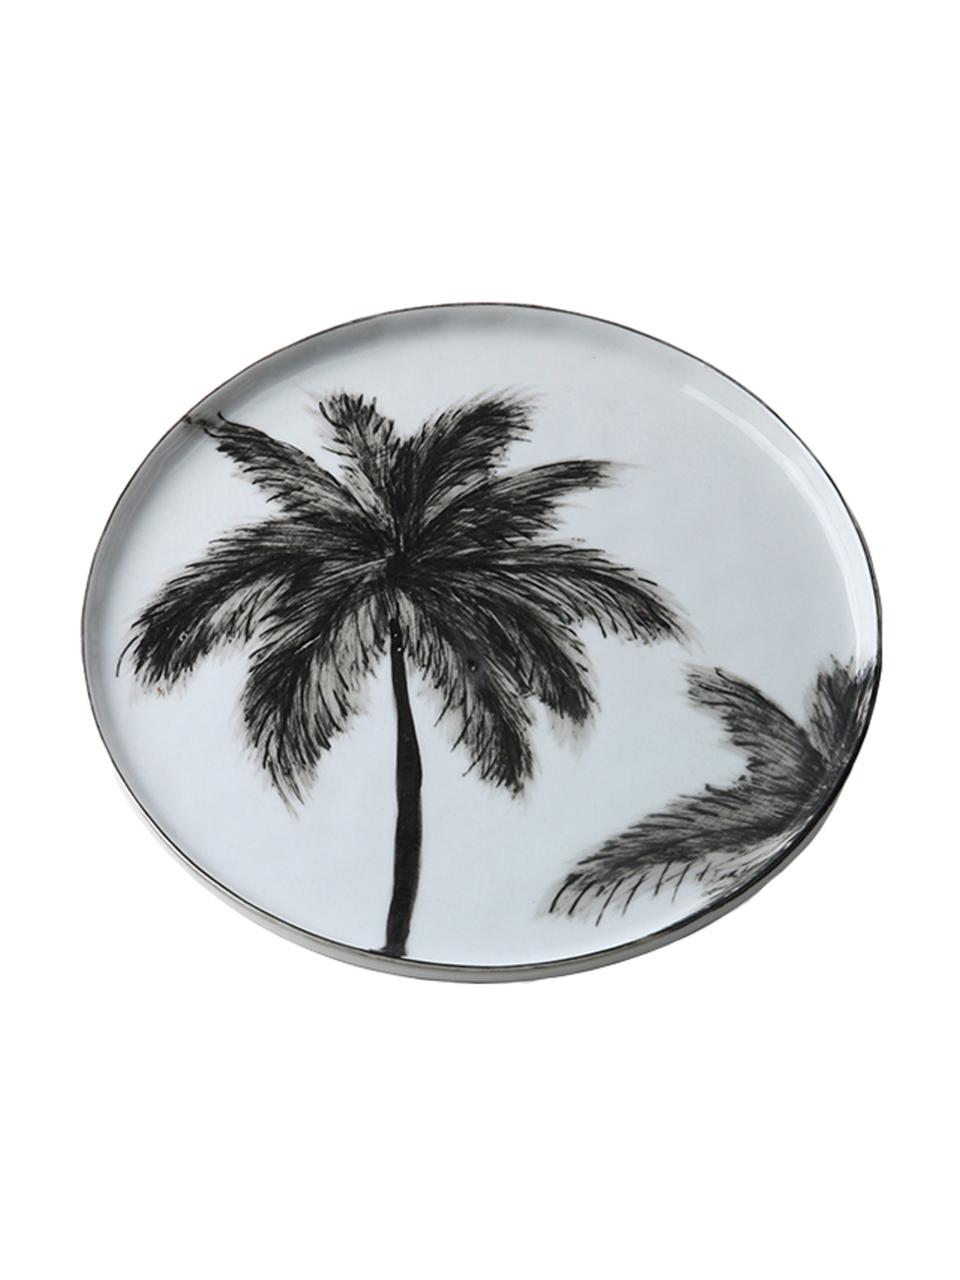 Snídaňový talíř s motivem palem Palms, 2 ks, Černá, bílá